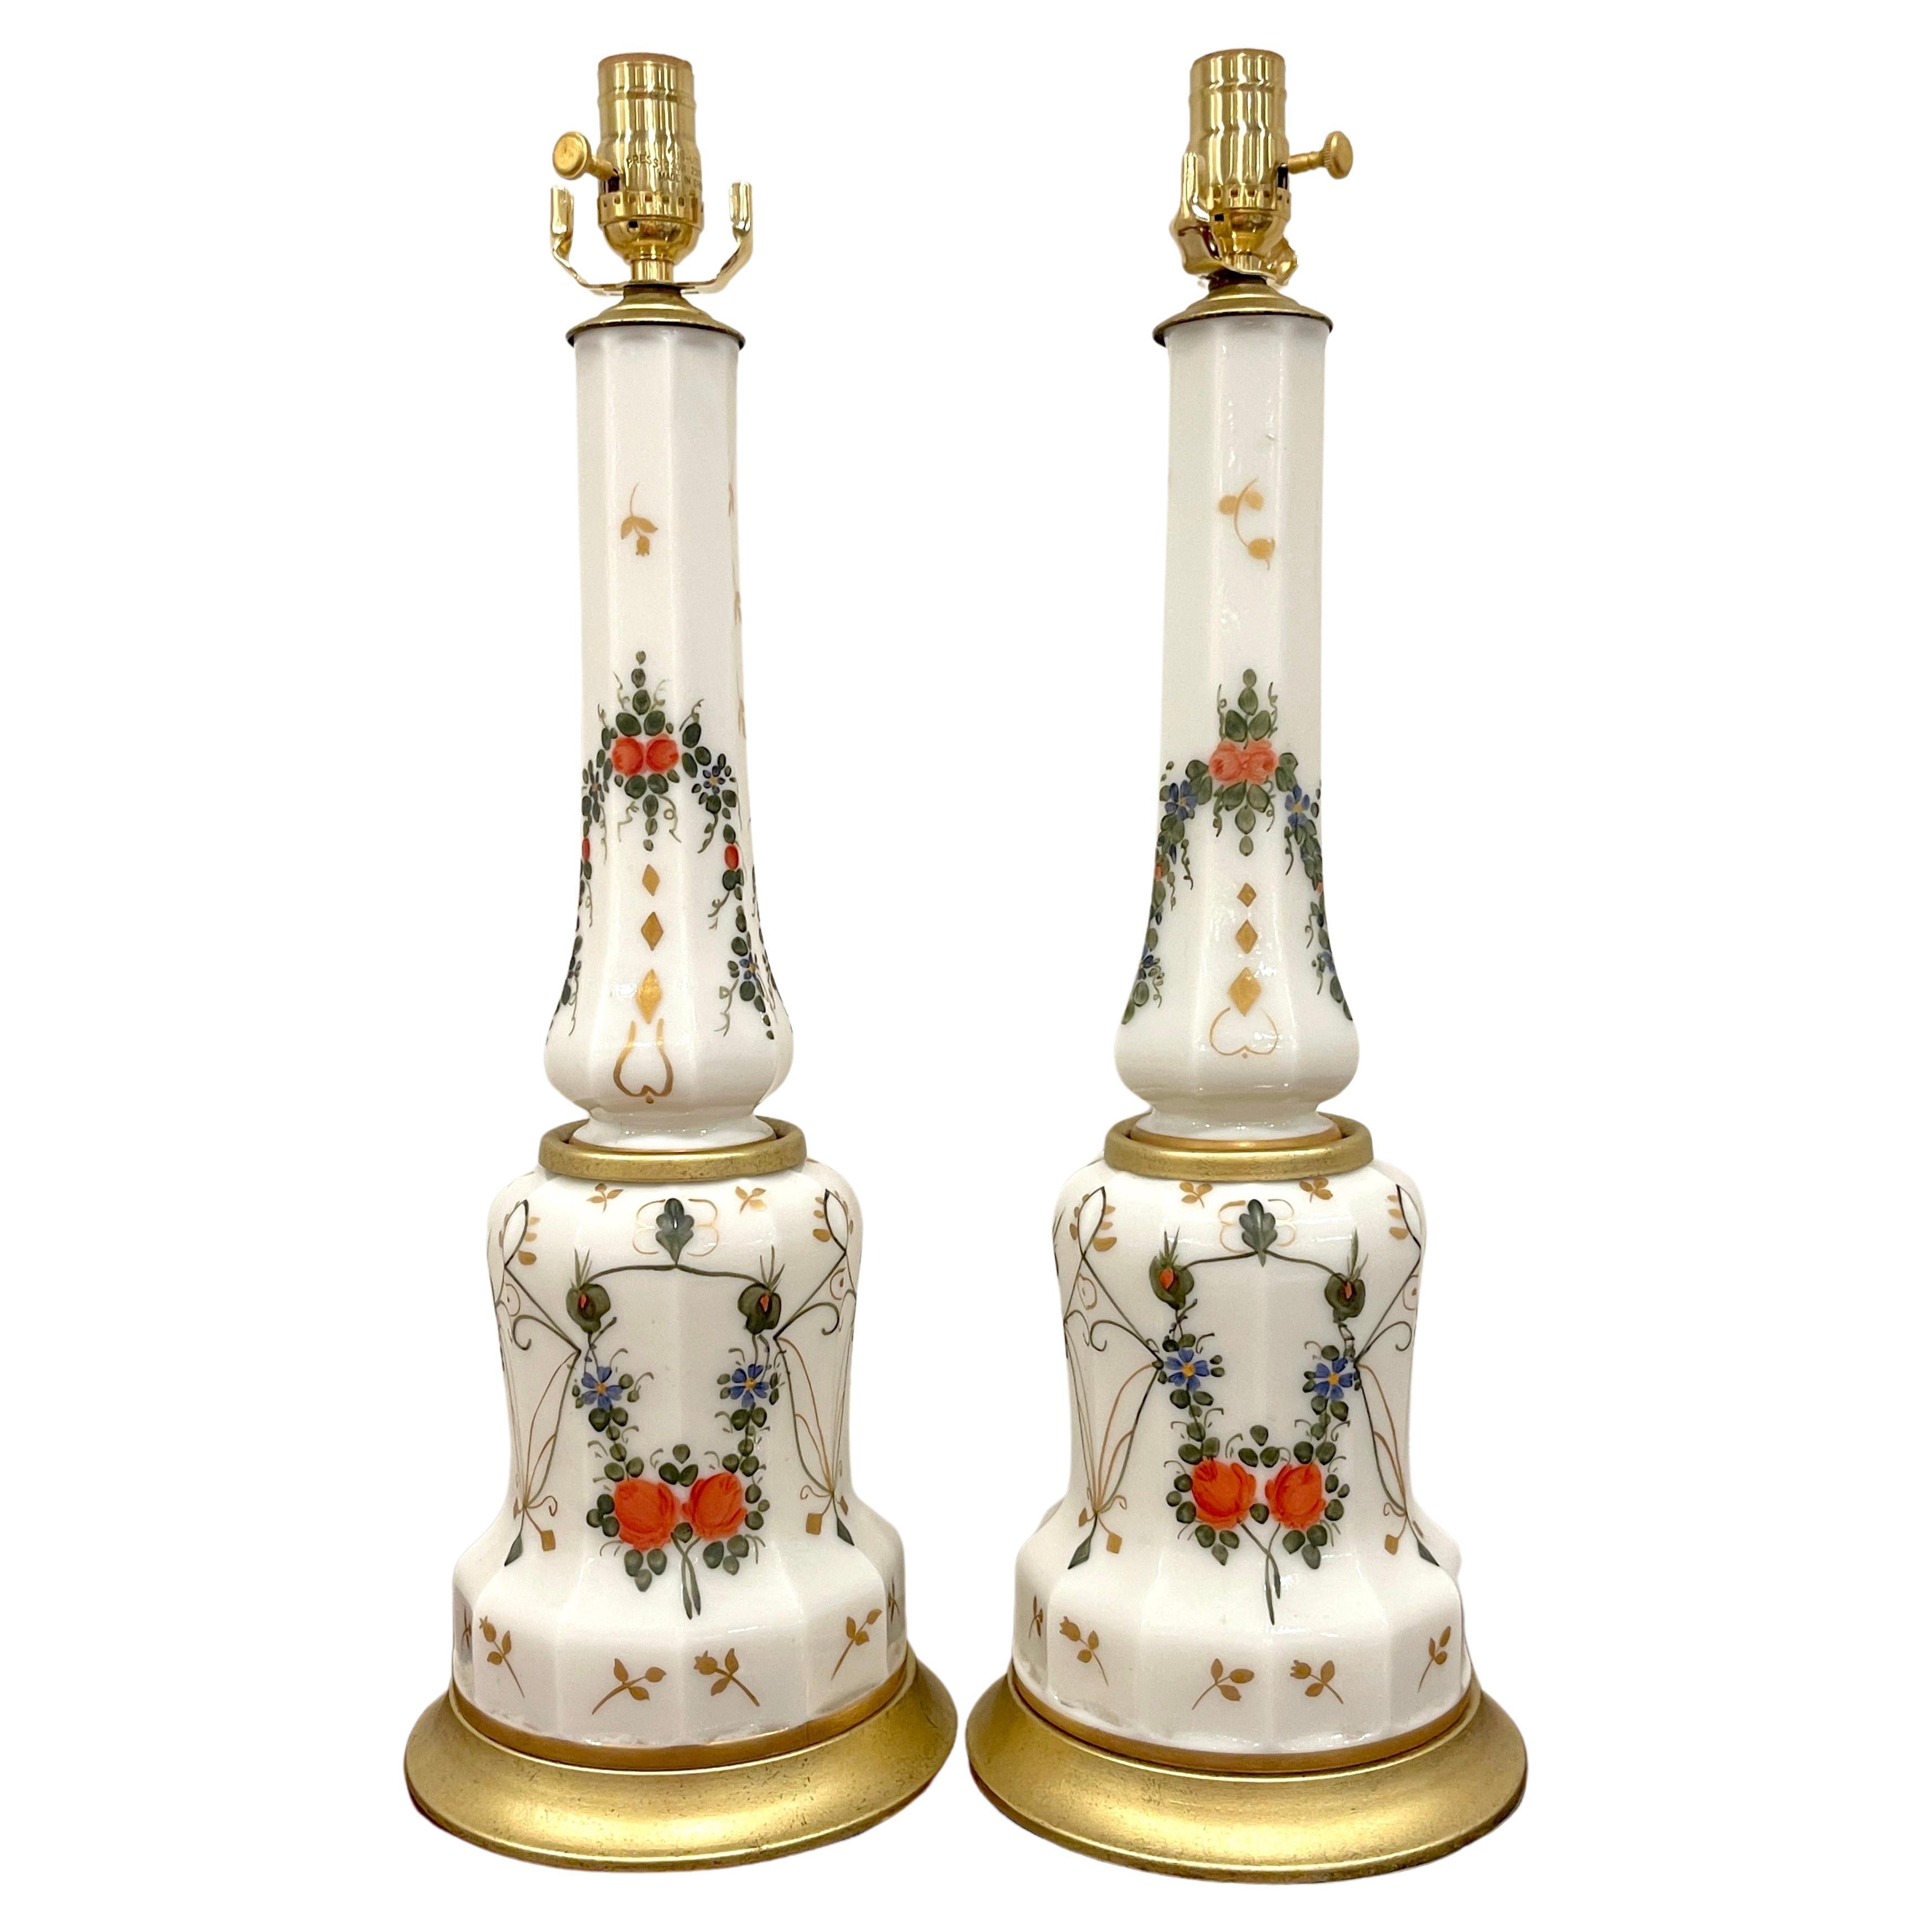 Paire de lampes colonnes italiennes néoclassiques en verre opalin émaillé de motifs floraux